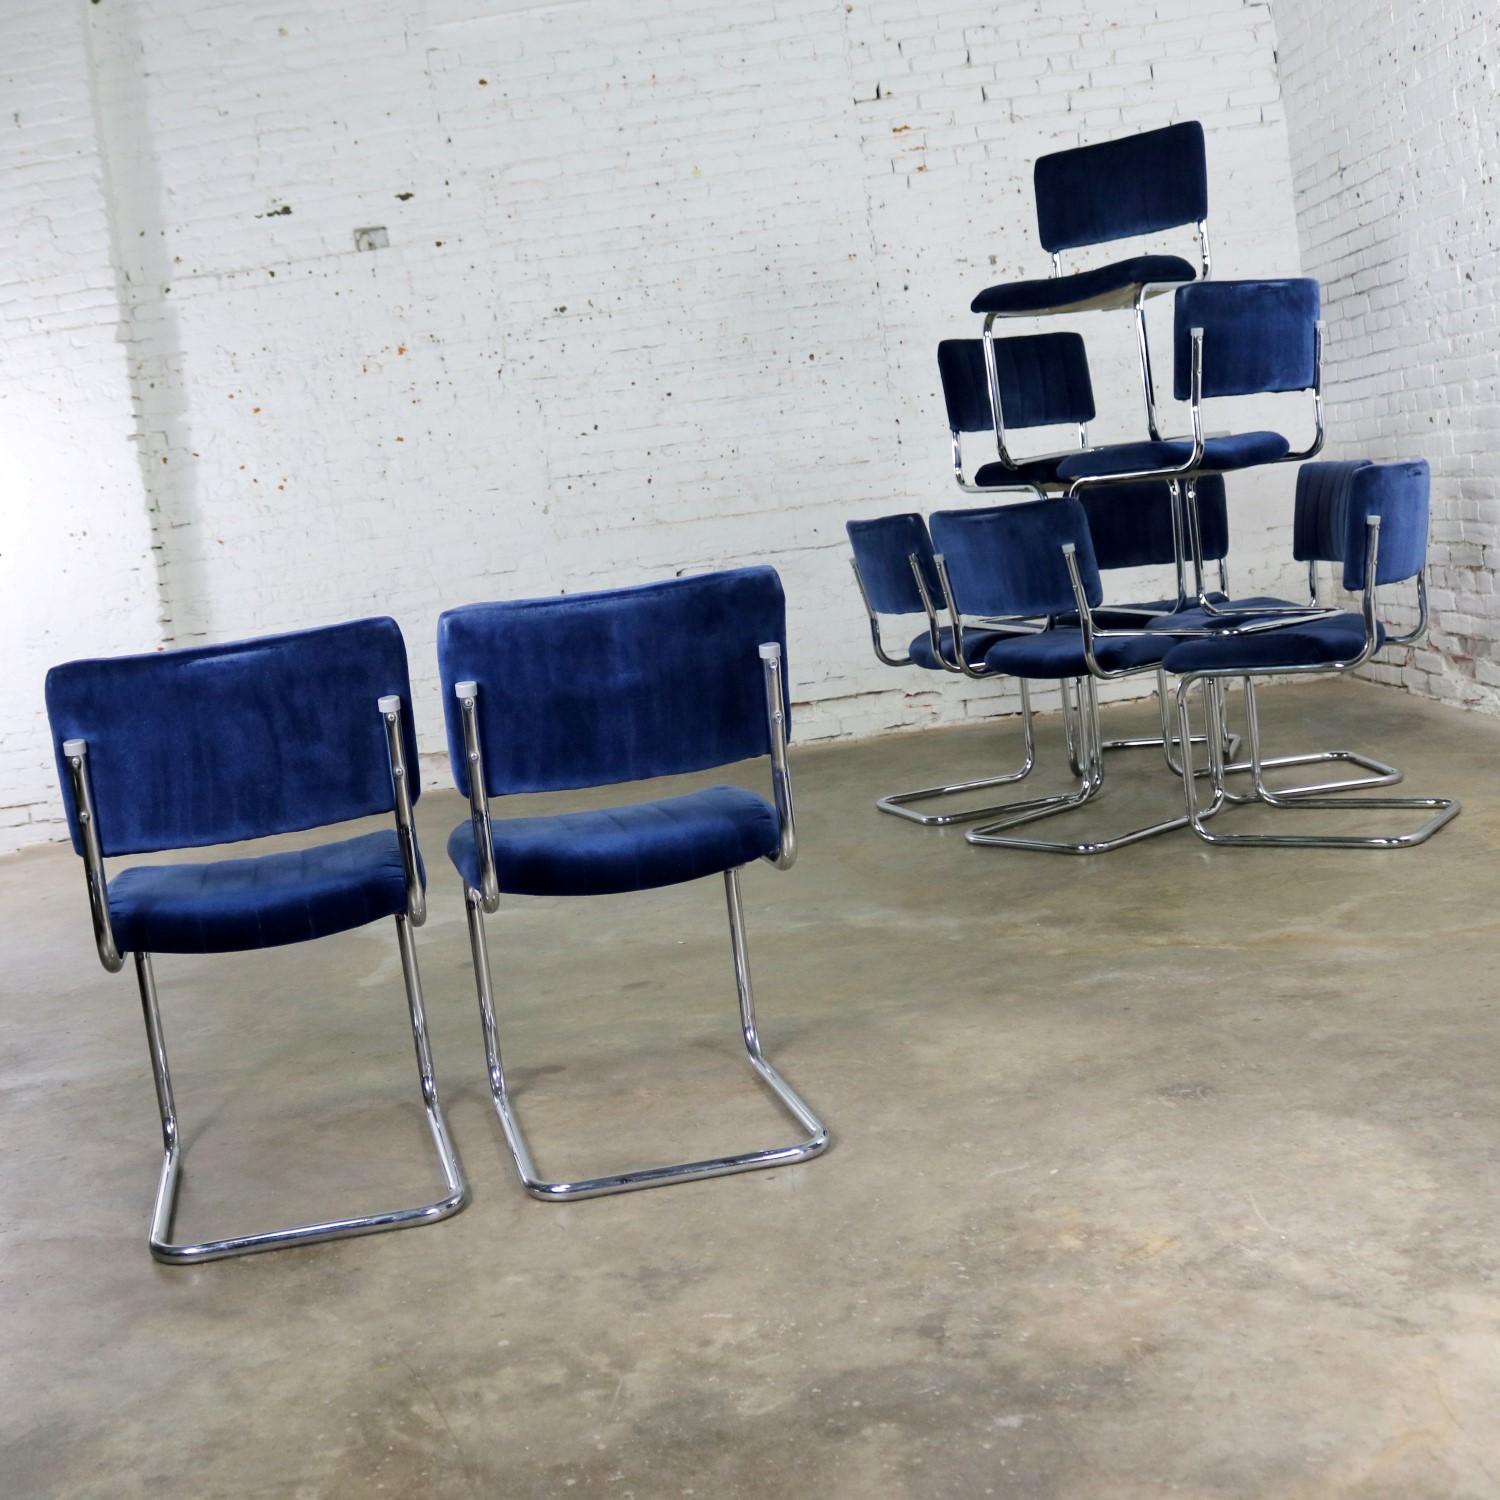 FOR LISA - 4 Cantilevered Chrome Blue Velvet Dining Chairs Marcel Breuer Cesca 1